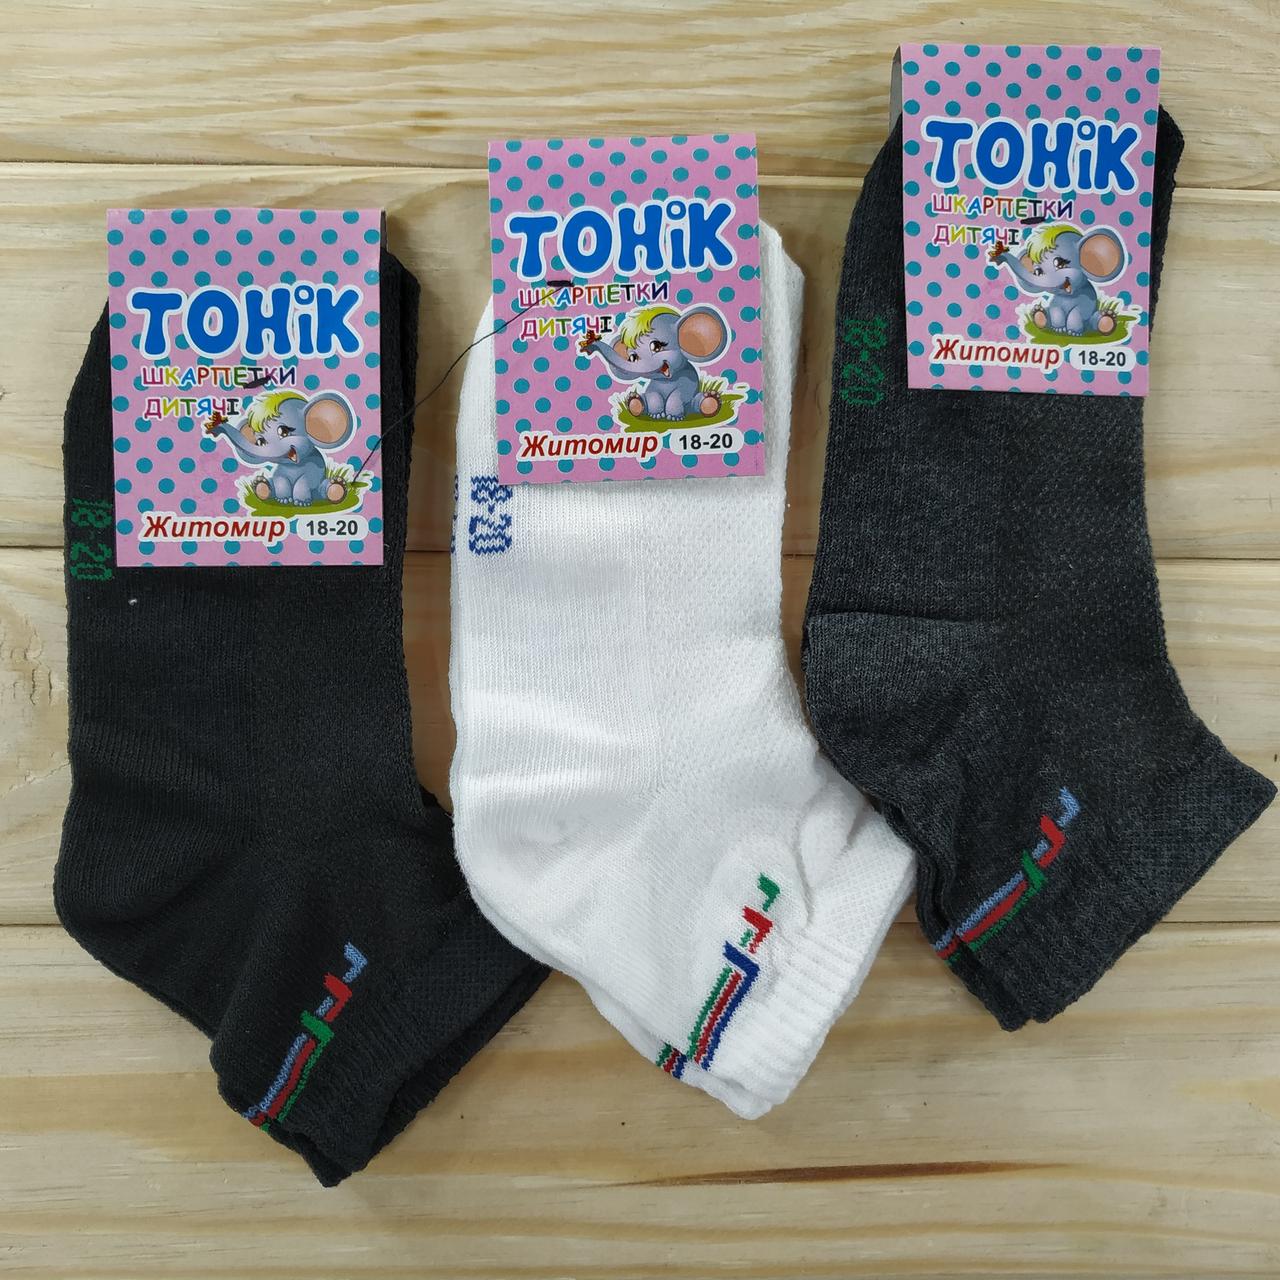 Шкарпетки дитячі з сіткою ТОНІК ЖИТОМИР 18-20 розмір асорті НДЛ-09205